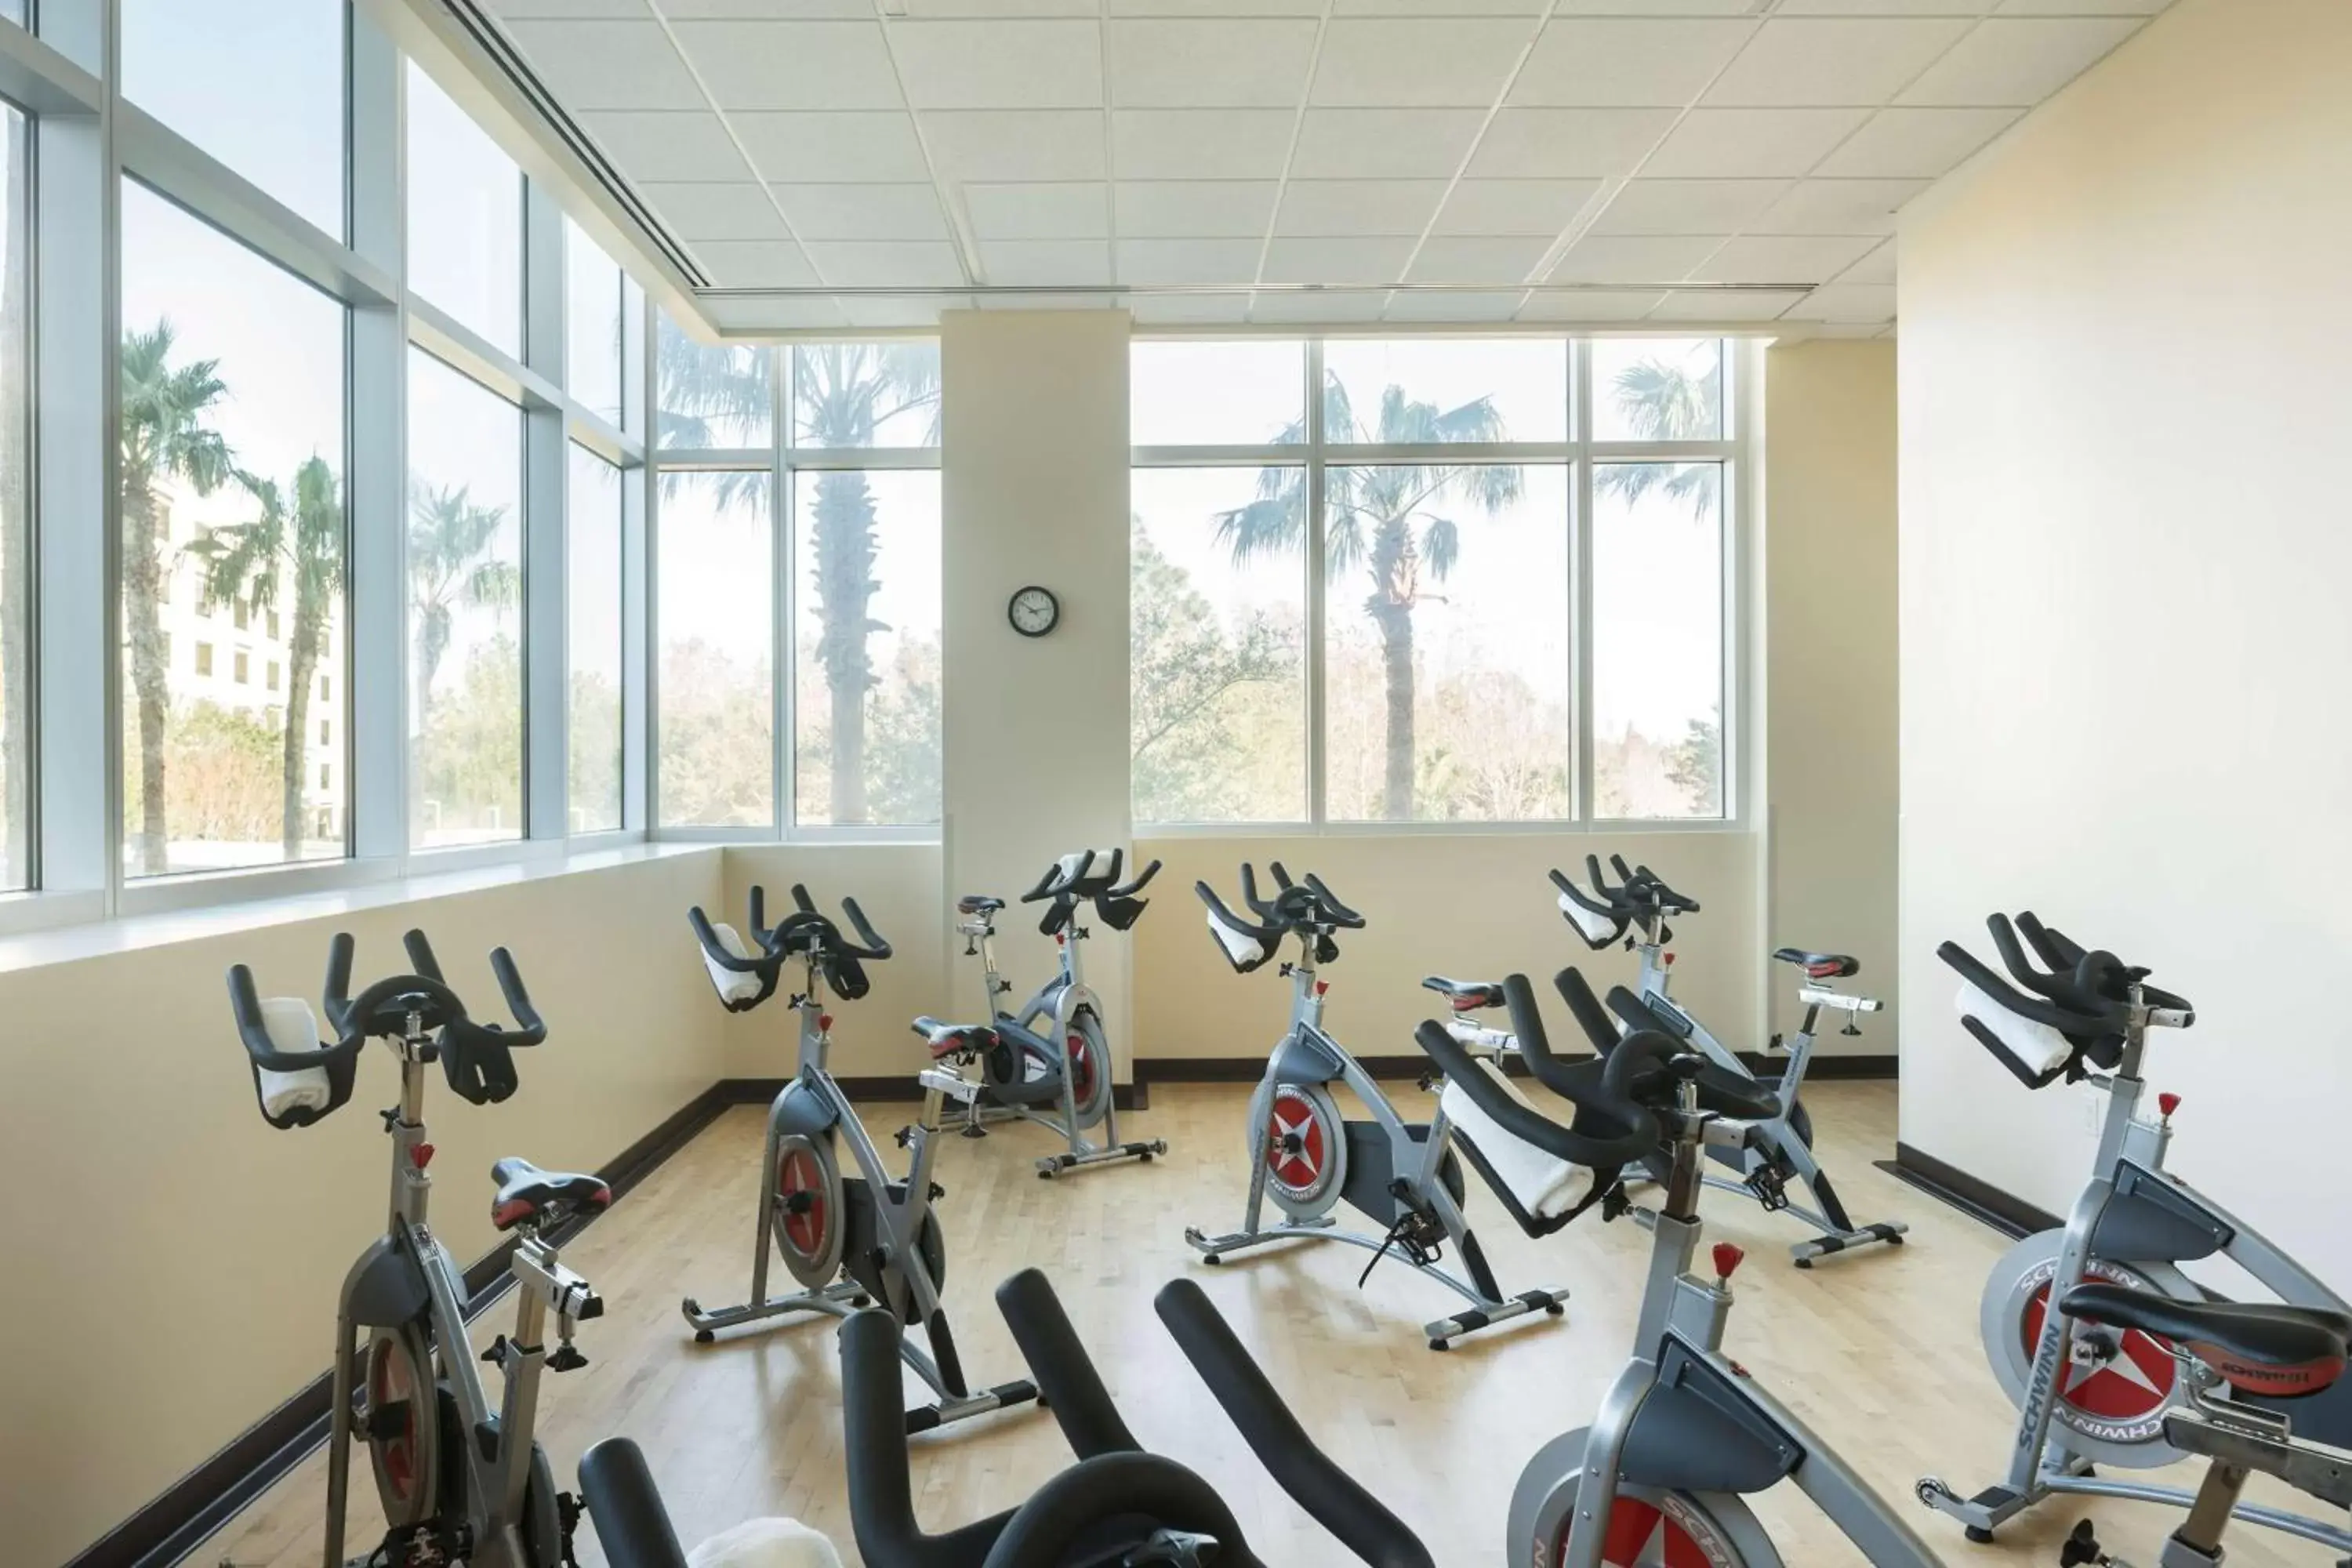 Fitness centre/facilities, Fitness Center/Facilities in Hyatt Regency Orlando